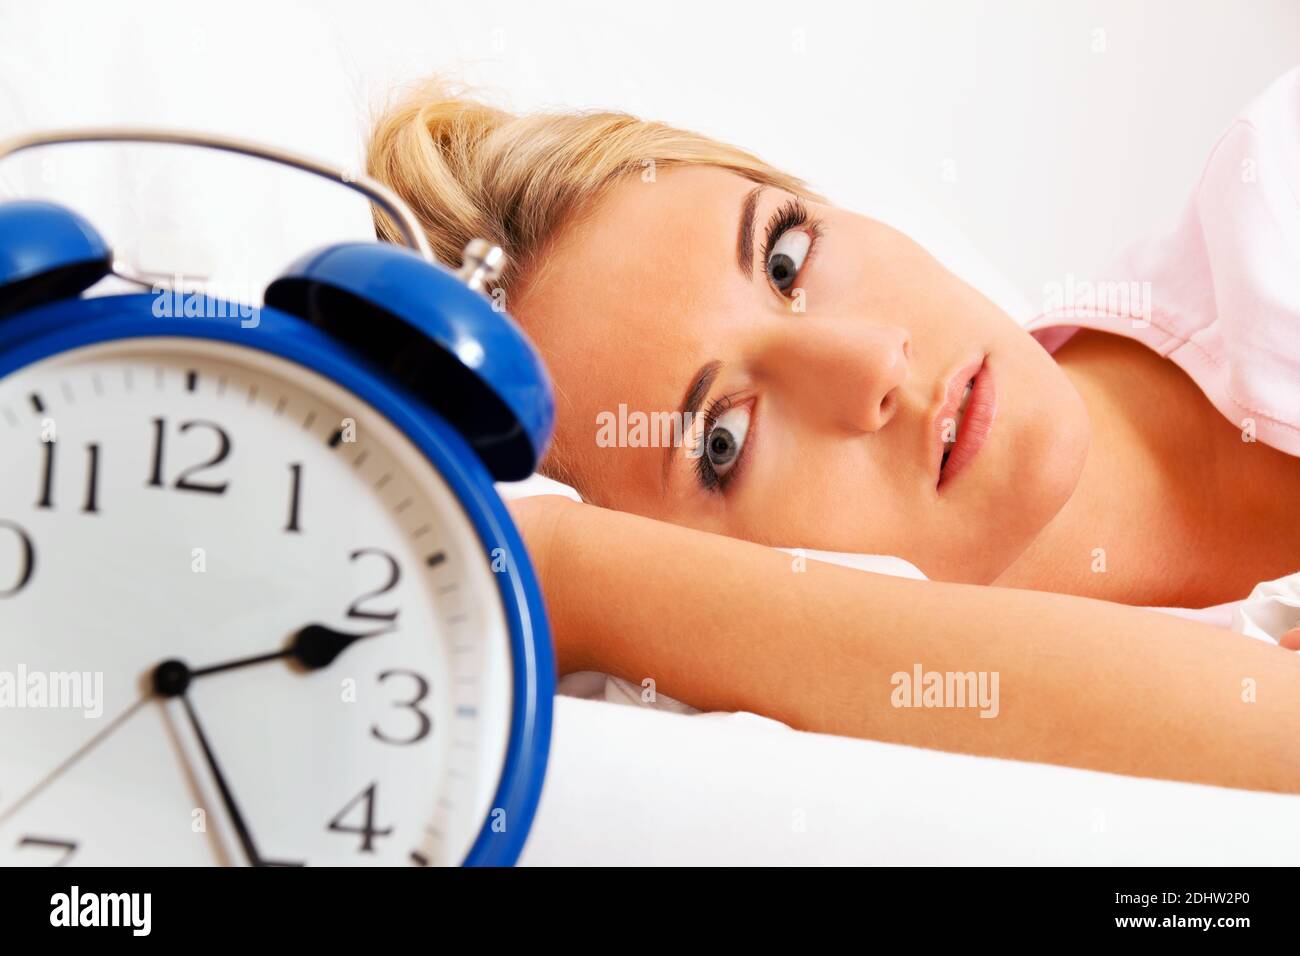 Junge blonde Frau leidet eine Schlaflosigkeit, Wecker zeigt 2.25 Uhr, Uhr, HERR: Ja Stockfoto